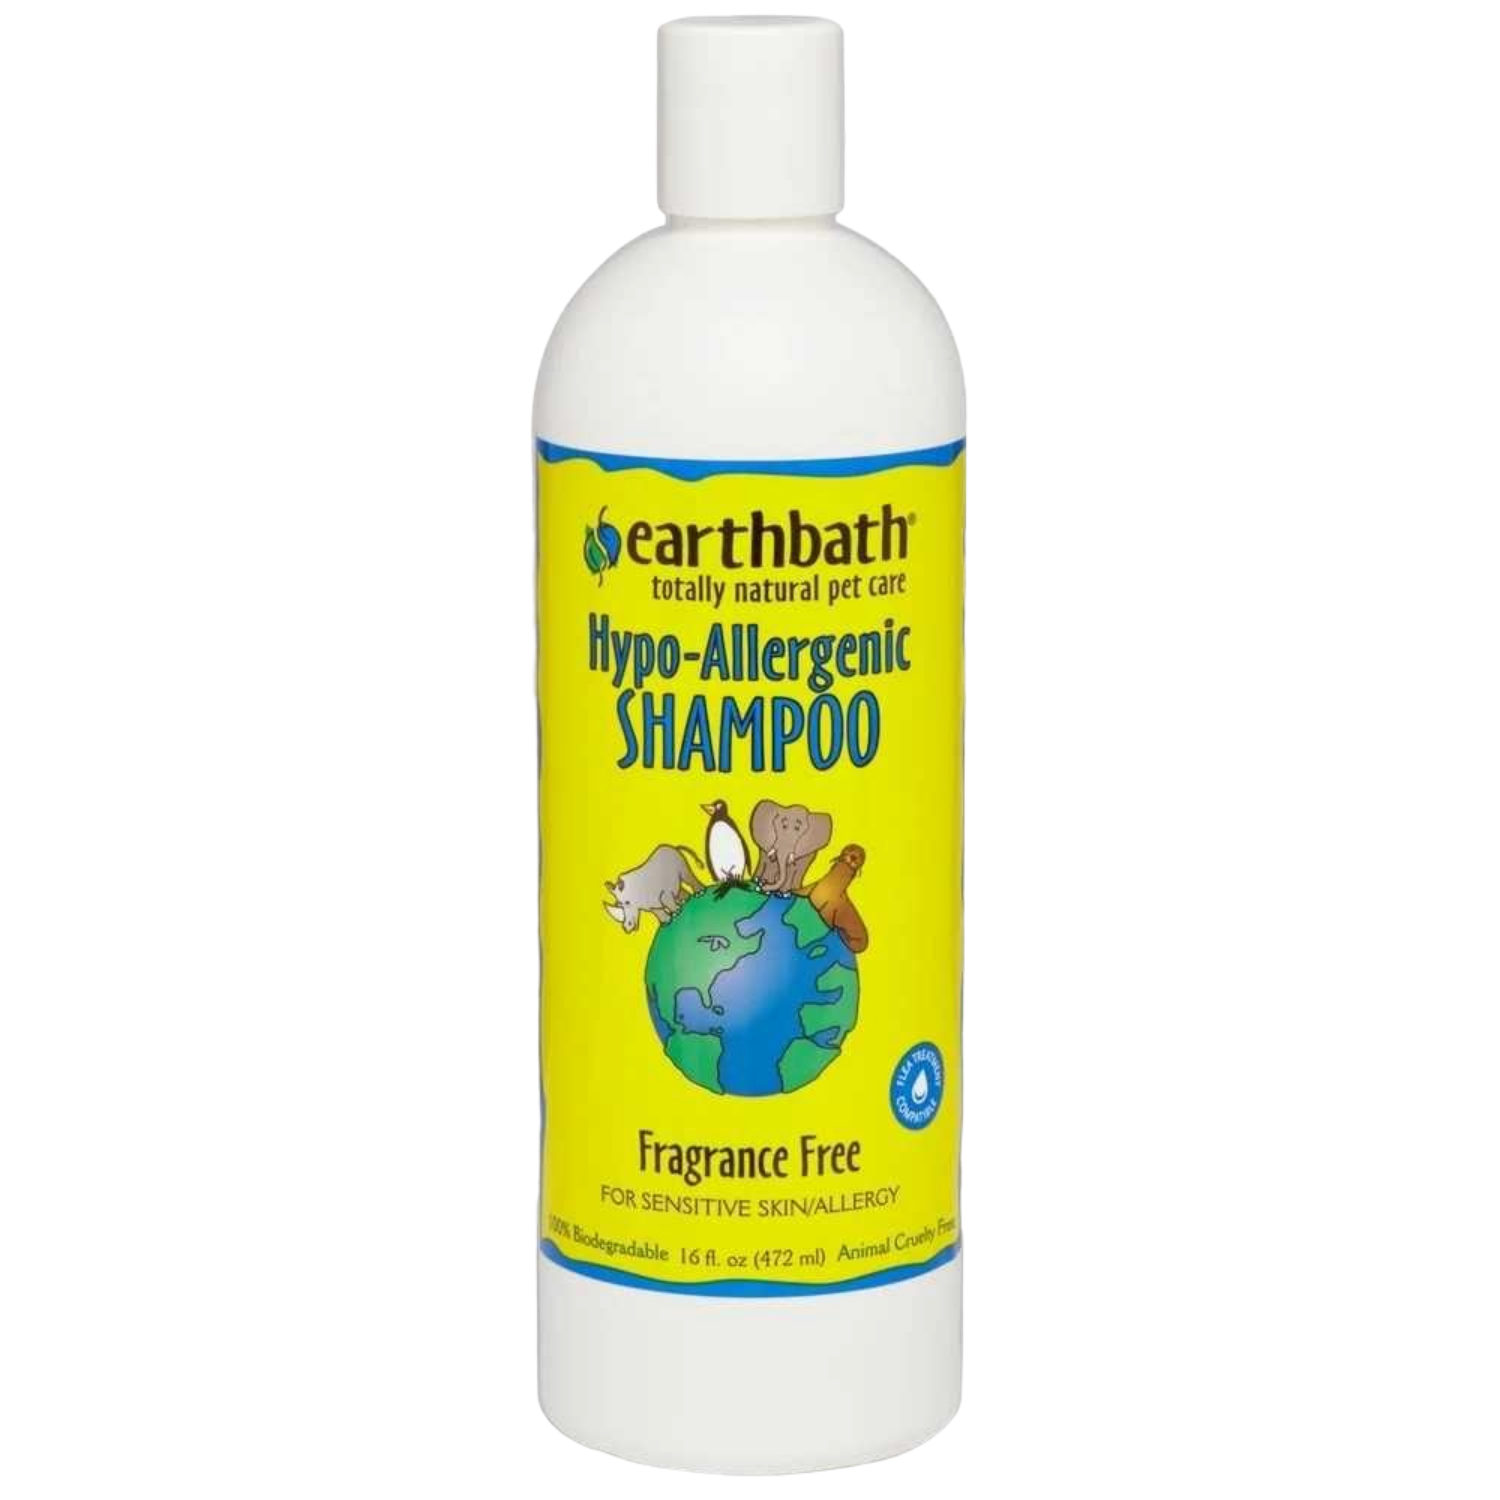 Earthbath Hypo-Allergenic Shampoo (Fragrance Free) - 472ml / 3785ml